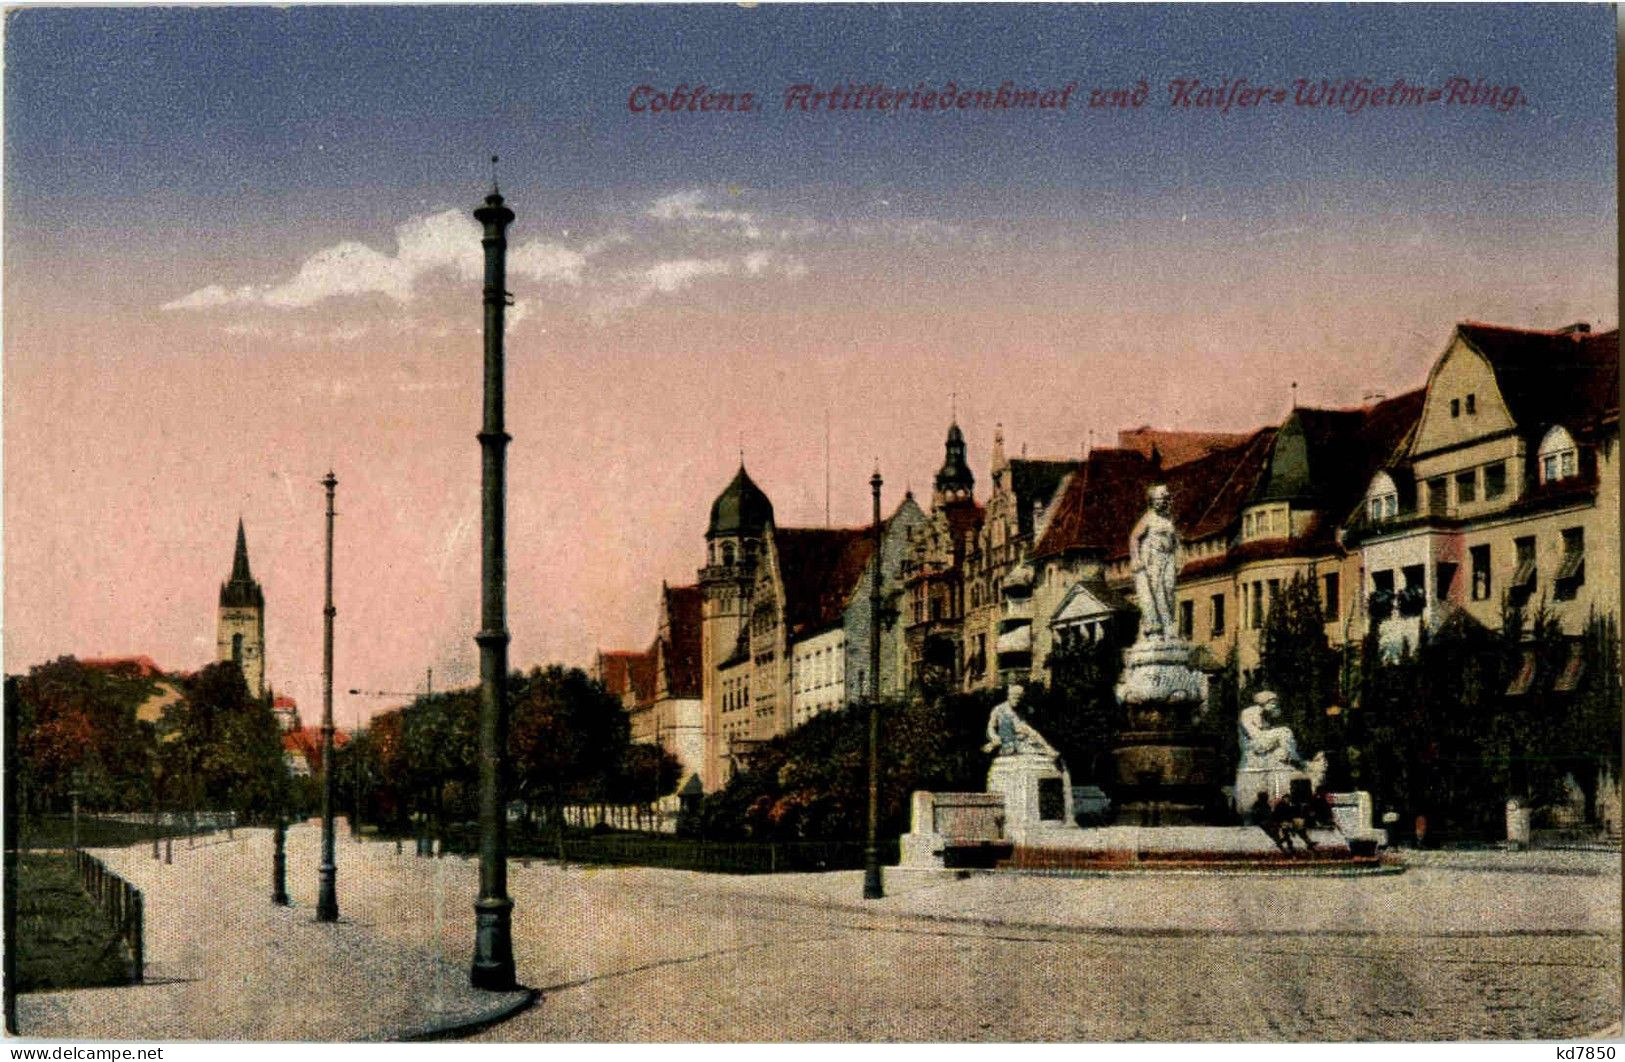 Koblenz - Artilleriedenkmal - Koblenz